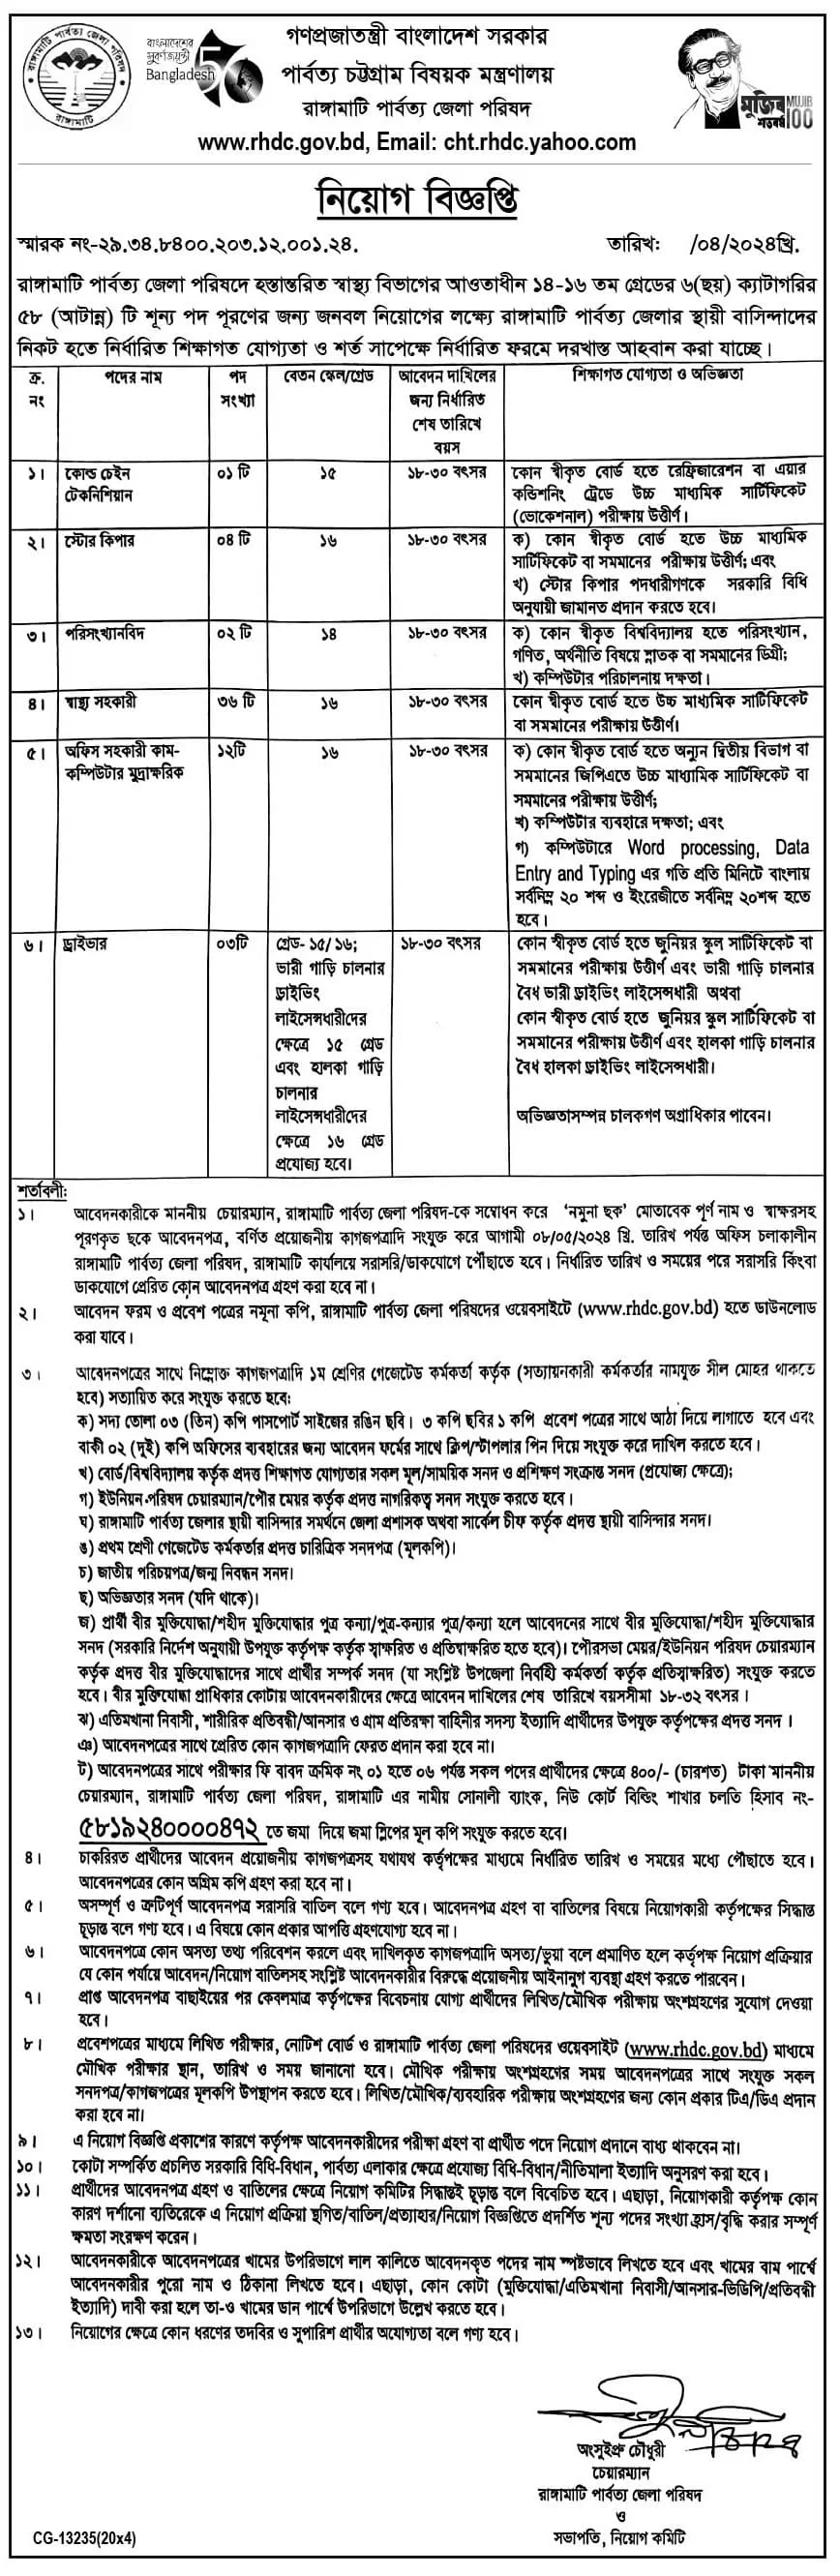 জেলা পরিষদ কার্যালয়ে নিয়োগ বিজ্ঞপ্তি ২০২৪ - Zilla Parishad Office Job Circular 2024